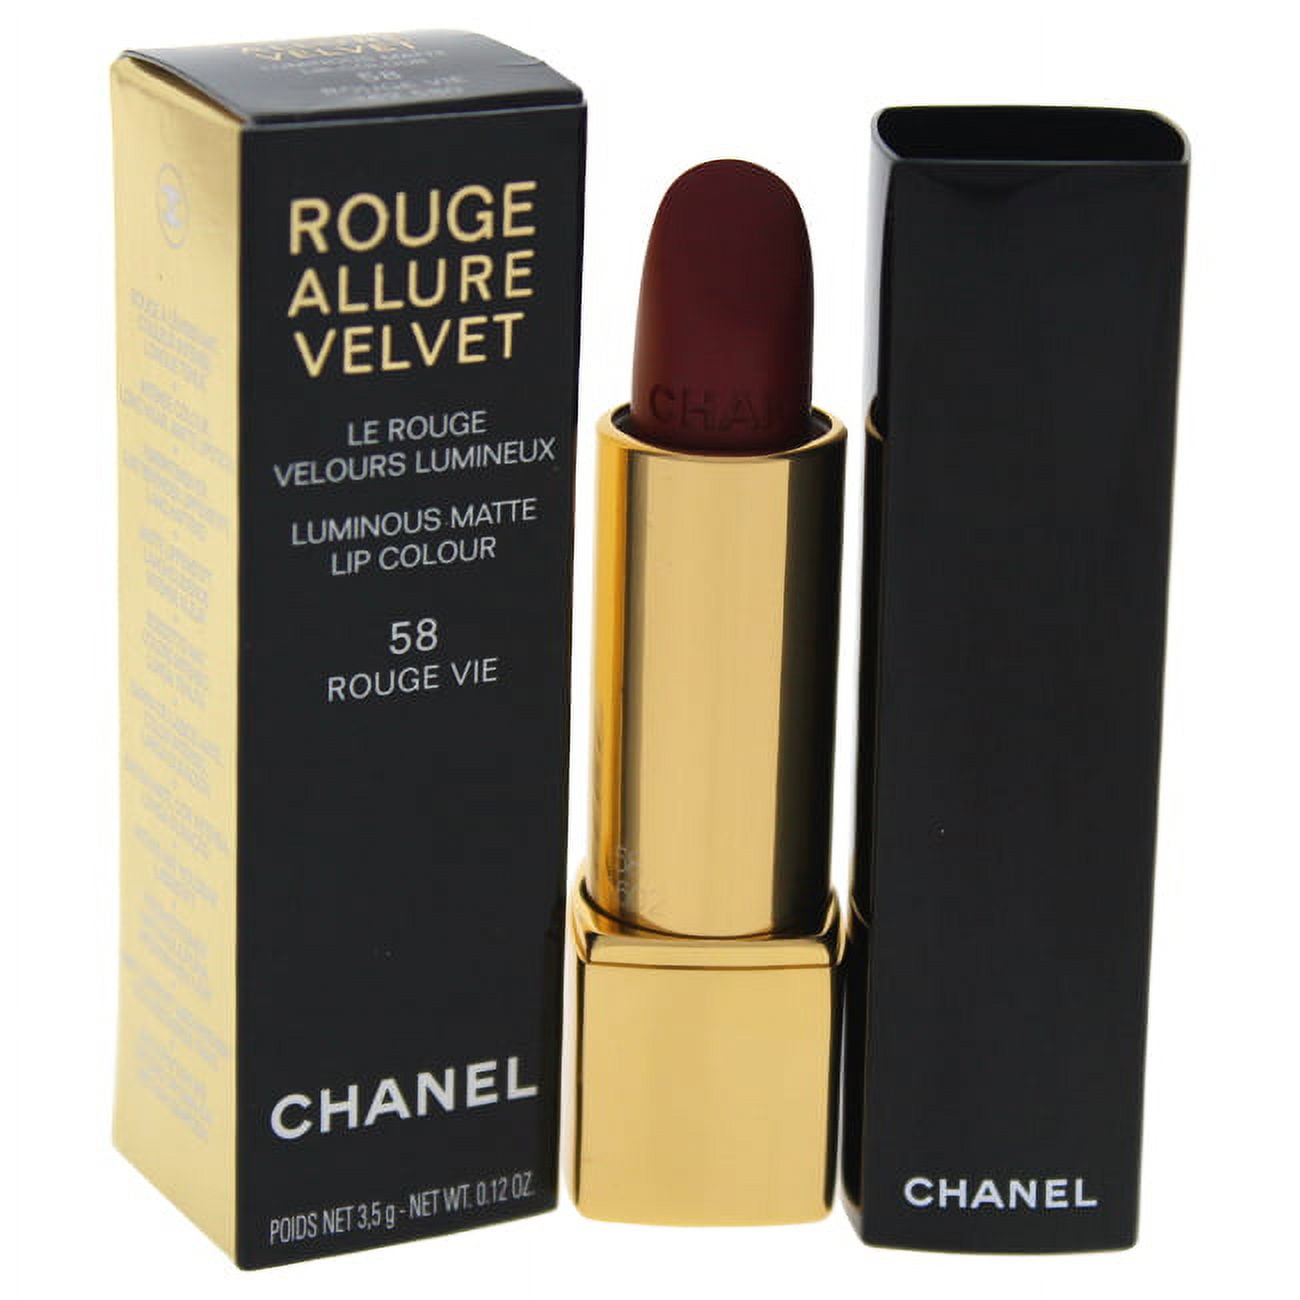 Chanel Rouge Allure Velvet Luminous Matte Lip Colour - # 58 Rouge Vie 0.12  oz Lipstick